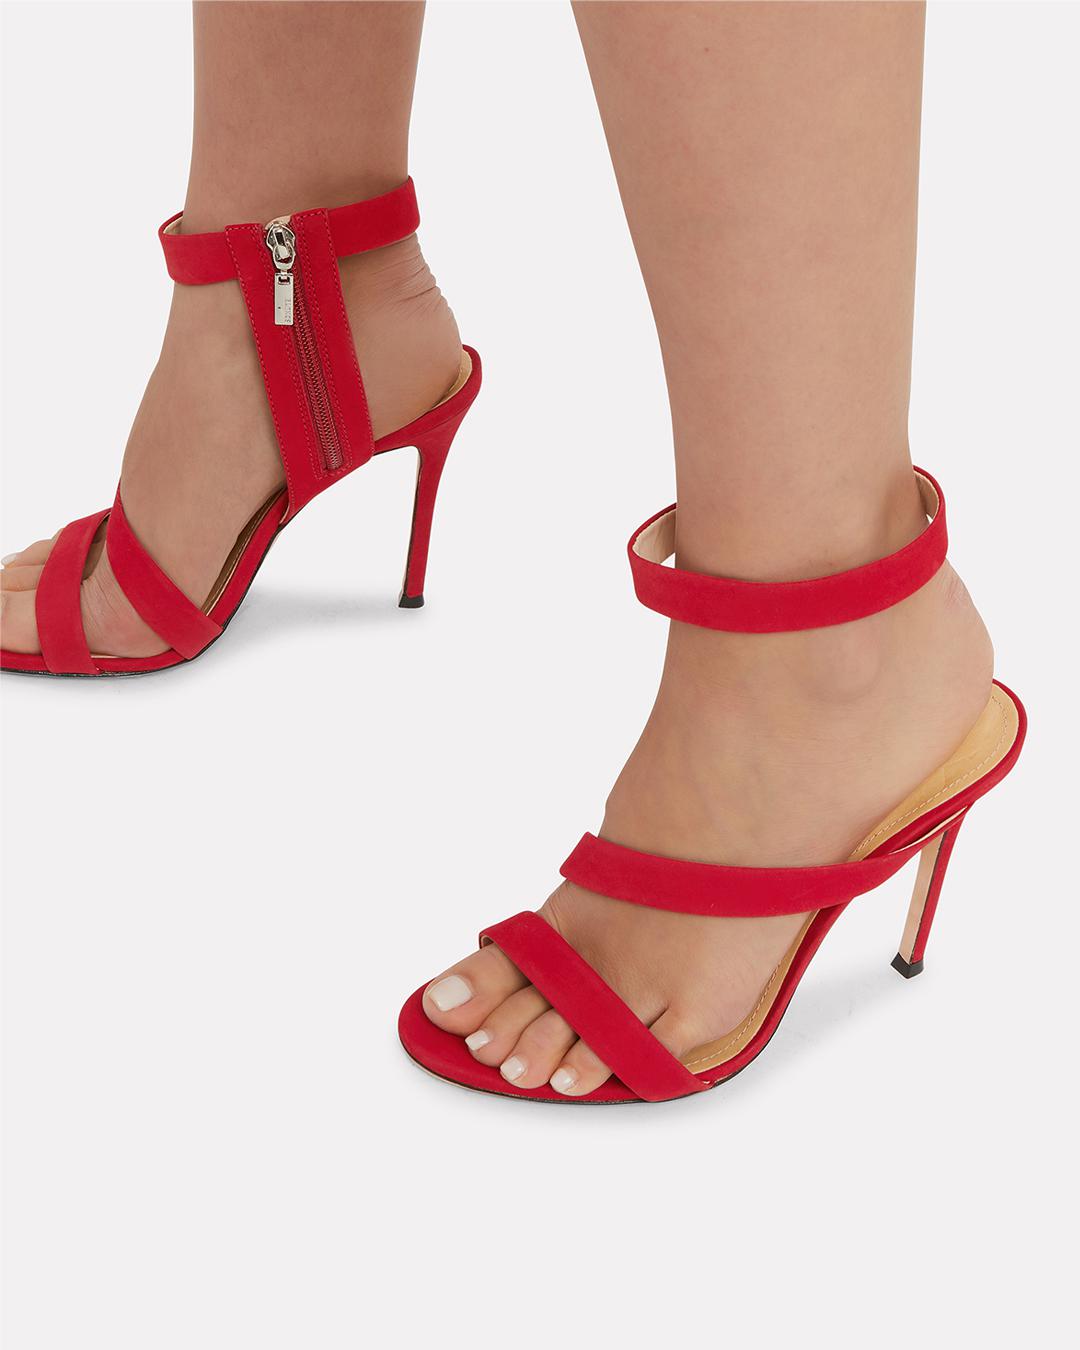 schutz red sandals